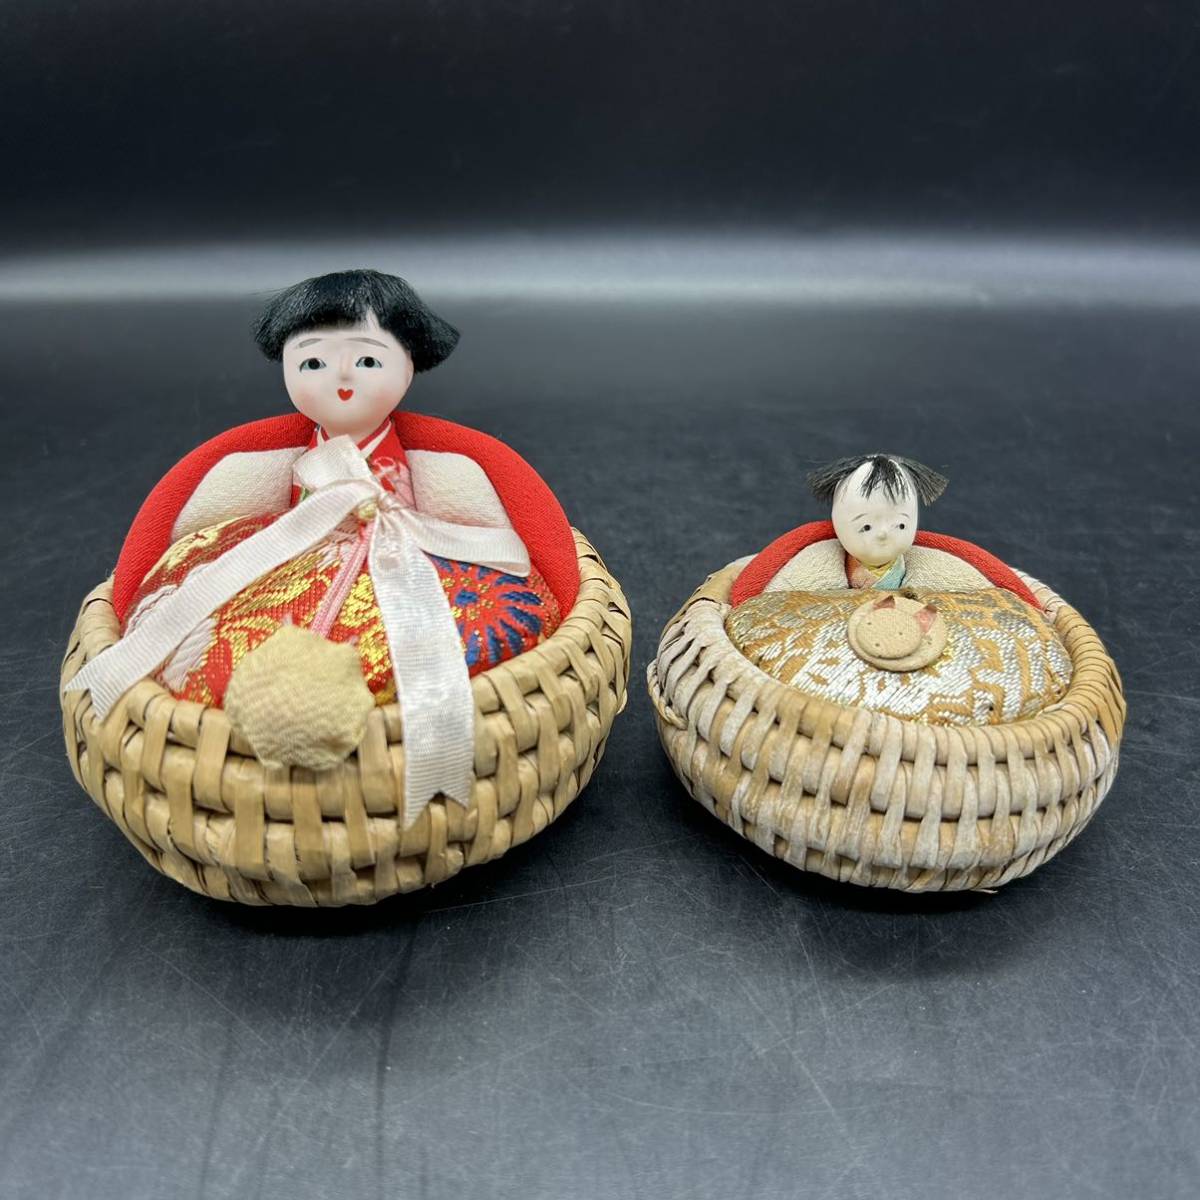 इज़ुमेको गुड़िया अवधि आइटम लोक शिल्प शिल्प शोवा रेट्रो यामागाटा प्रीफेक्चर गृहनगर शिल्प गुड़िया हिना गुड़िया H3-20, गुड़िया, चरित्र गुड़िया, जापानी गुड़िया, अन्य